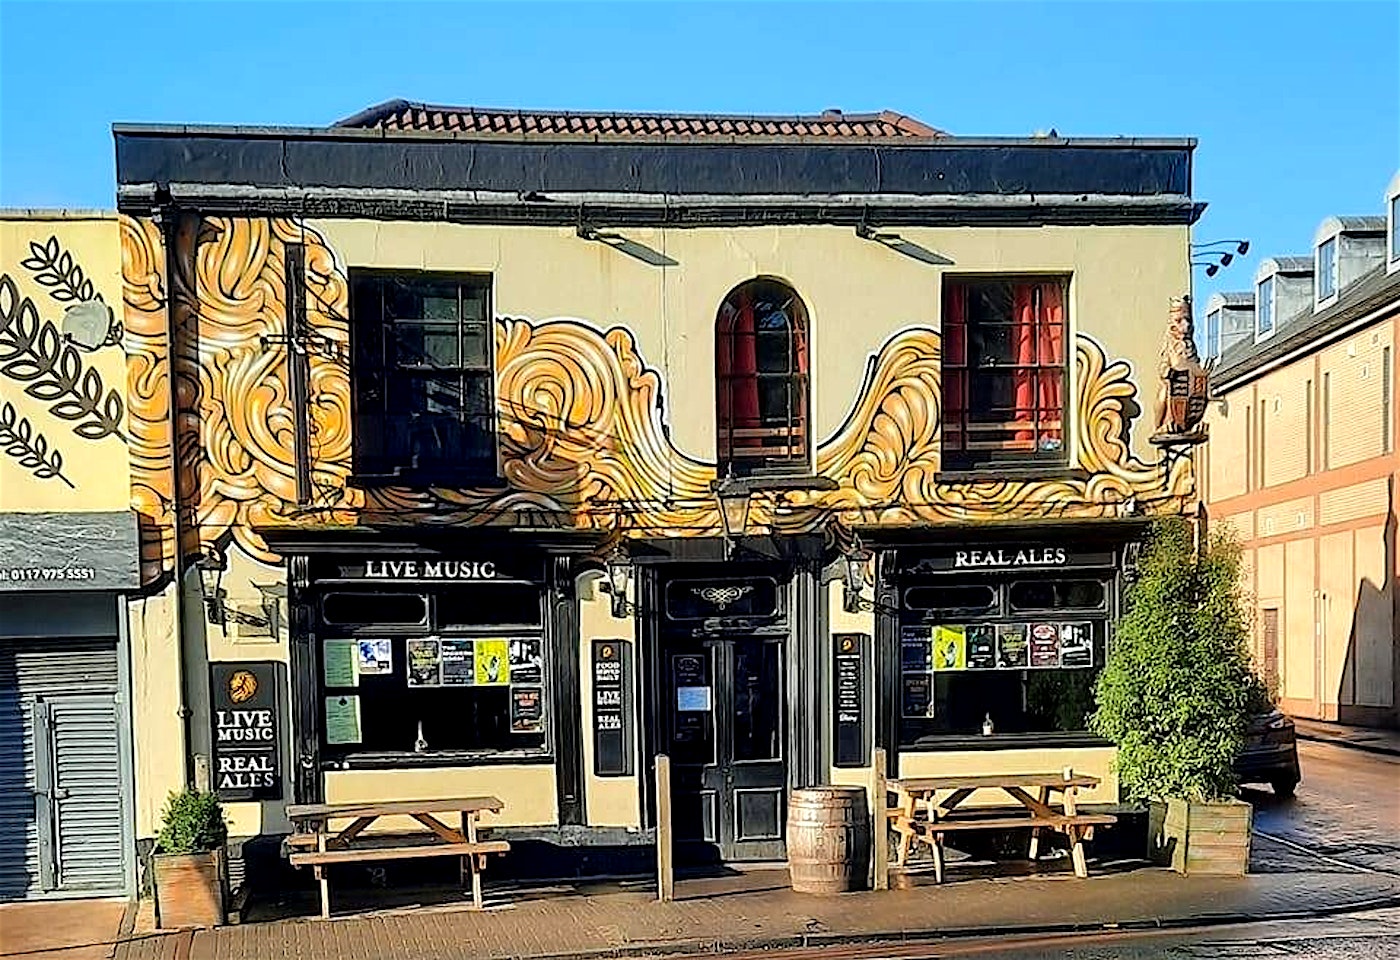 The Golden Lion Gloucester Road pub bristol